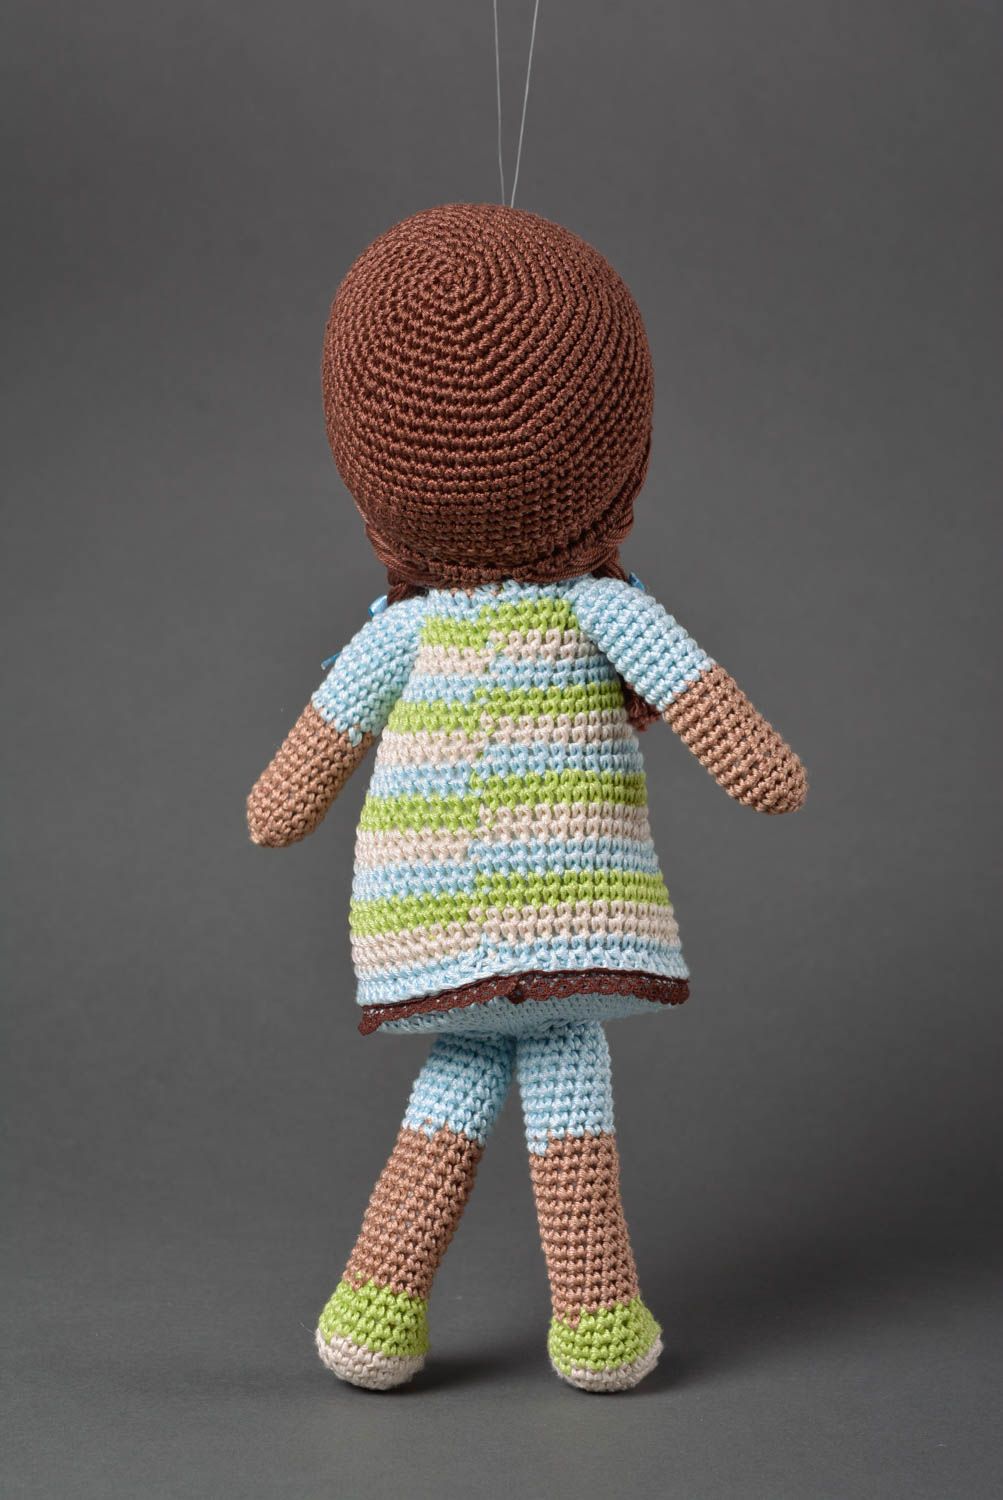 Handmade doll designer toy gift for children crocheted doll decor ideas photo 4